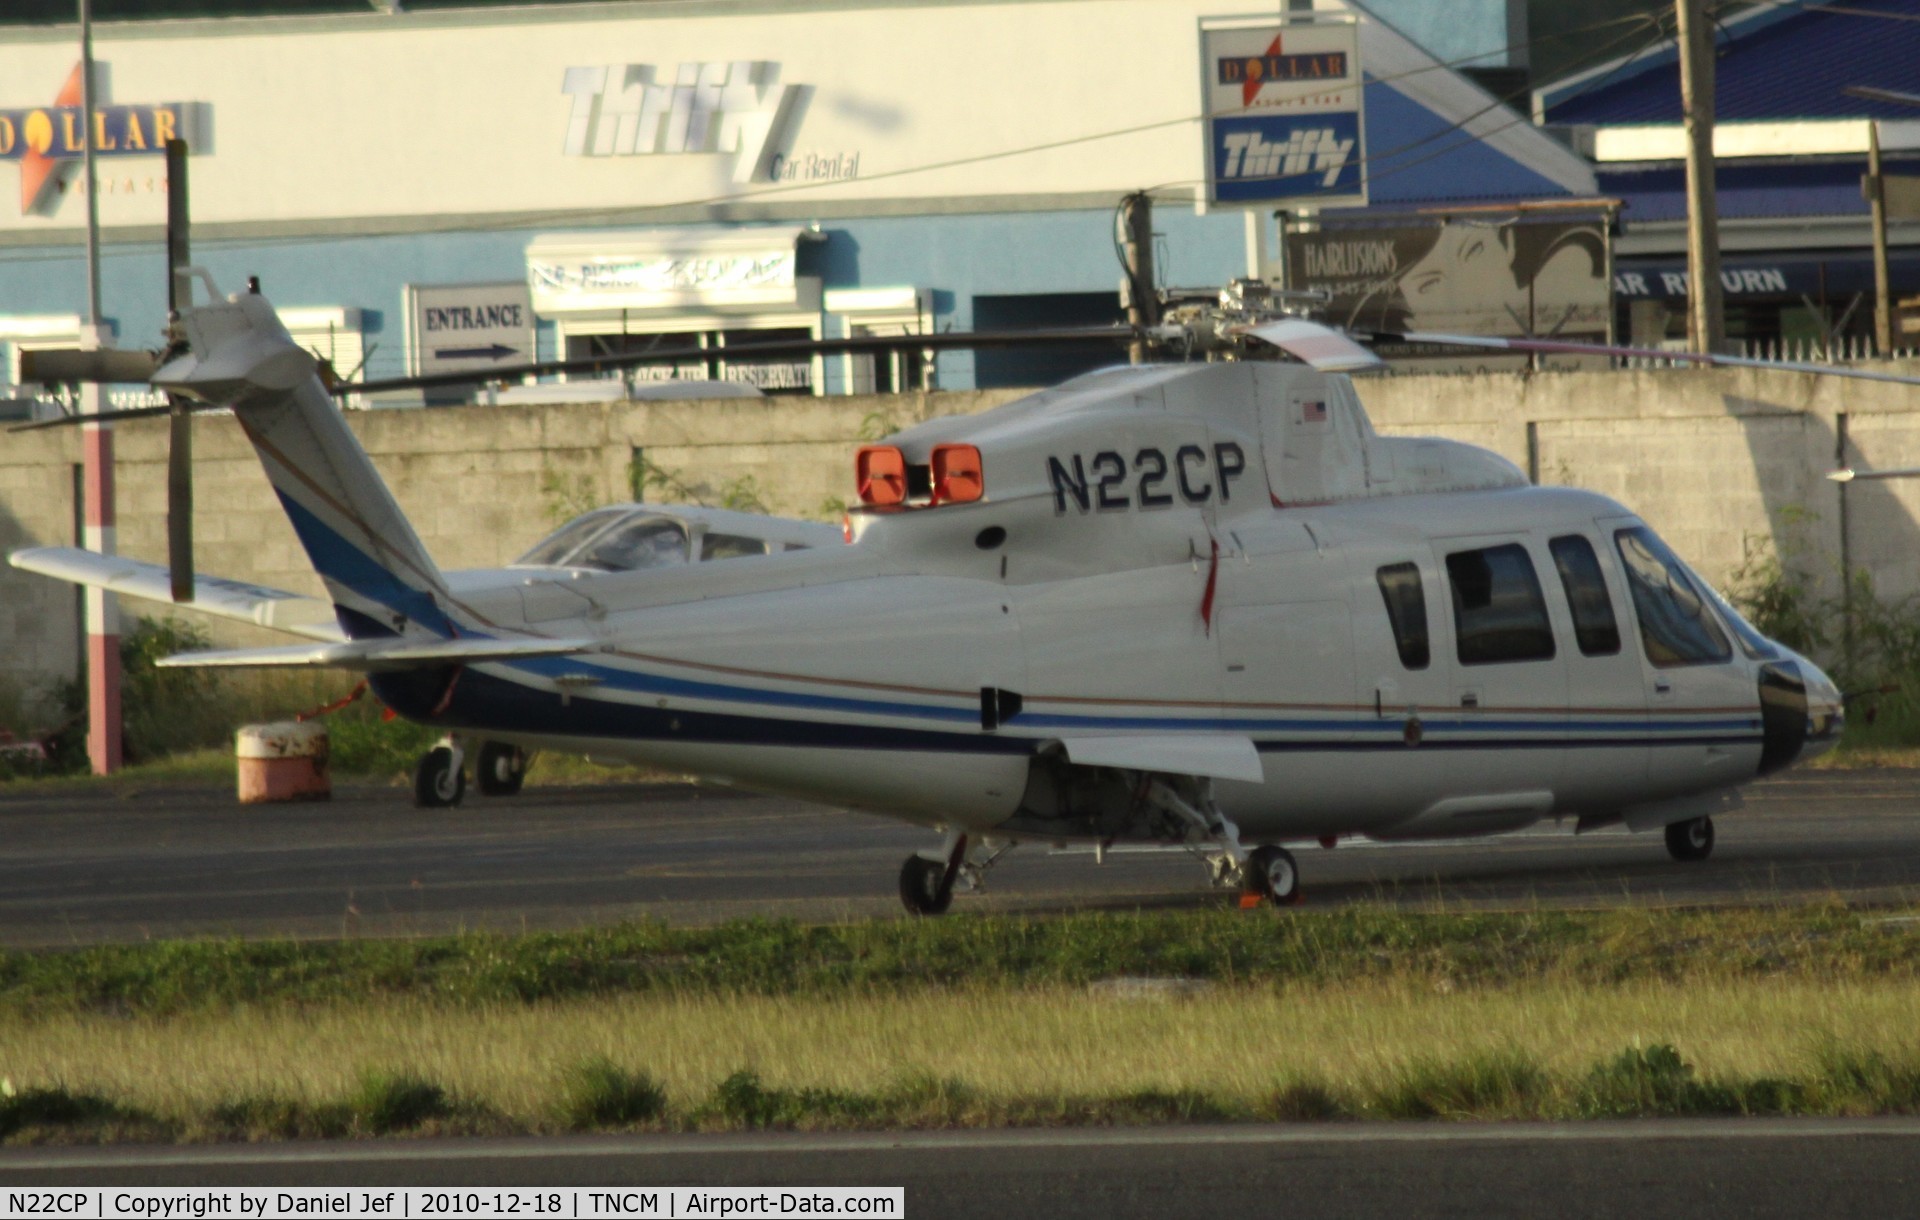 N22CP, 2002 Sikorsky S-76C C/N 760530, N22CP at the helipad at TNCM